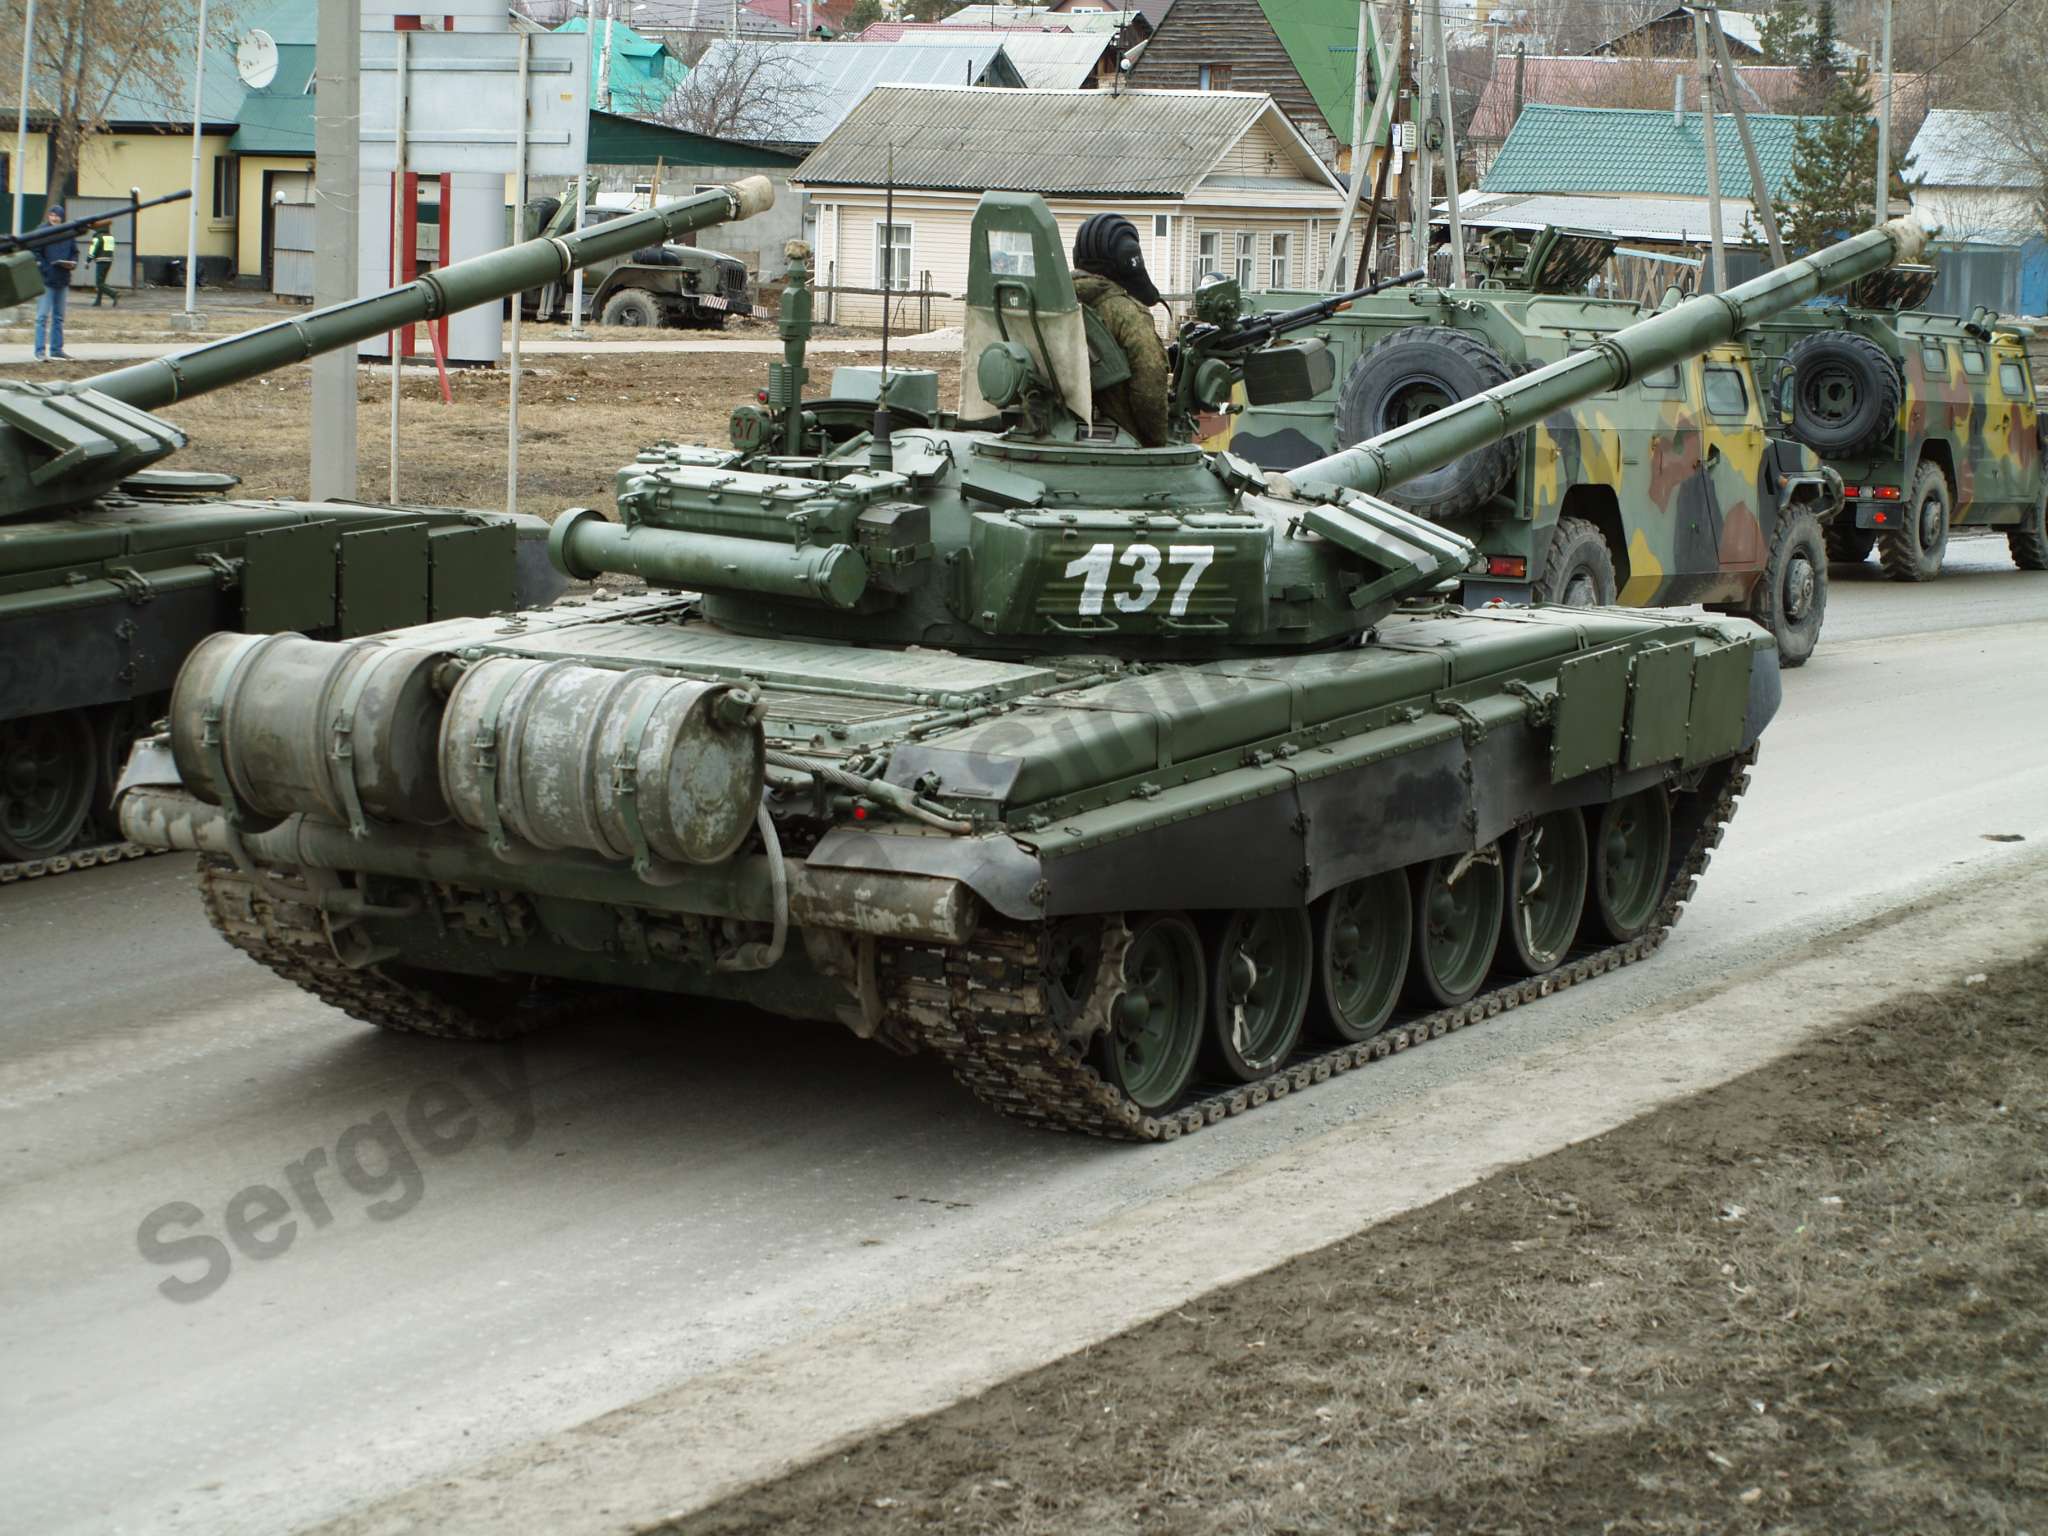 T-72B3_108.jpg